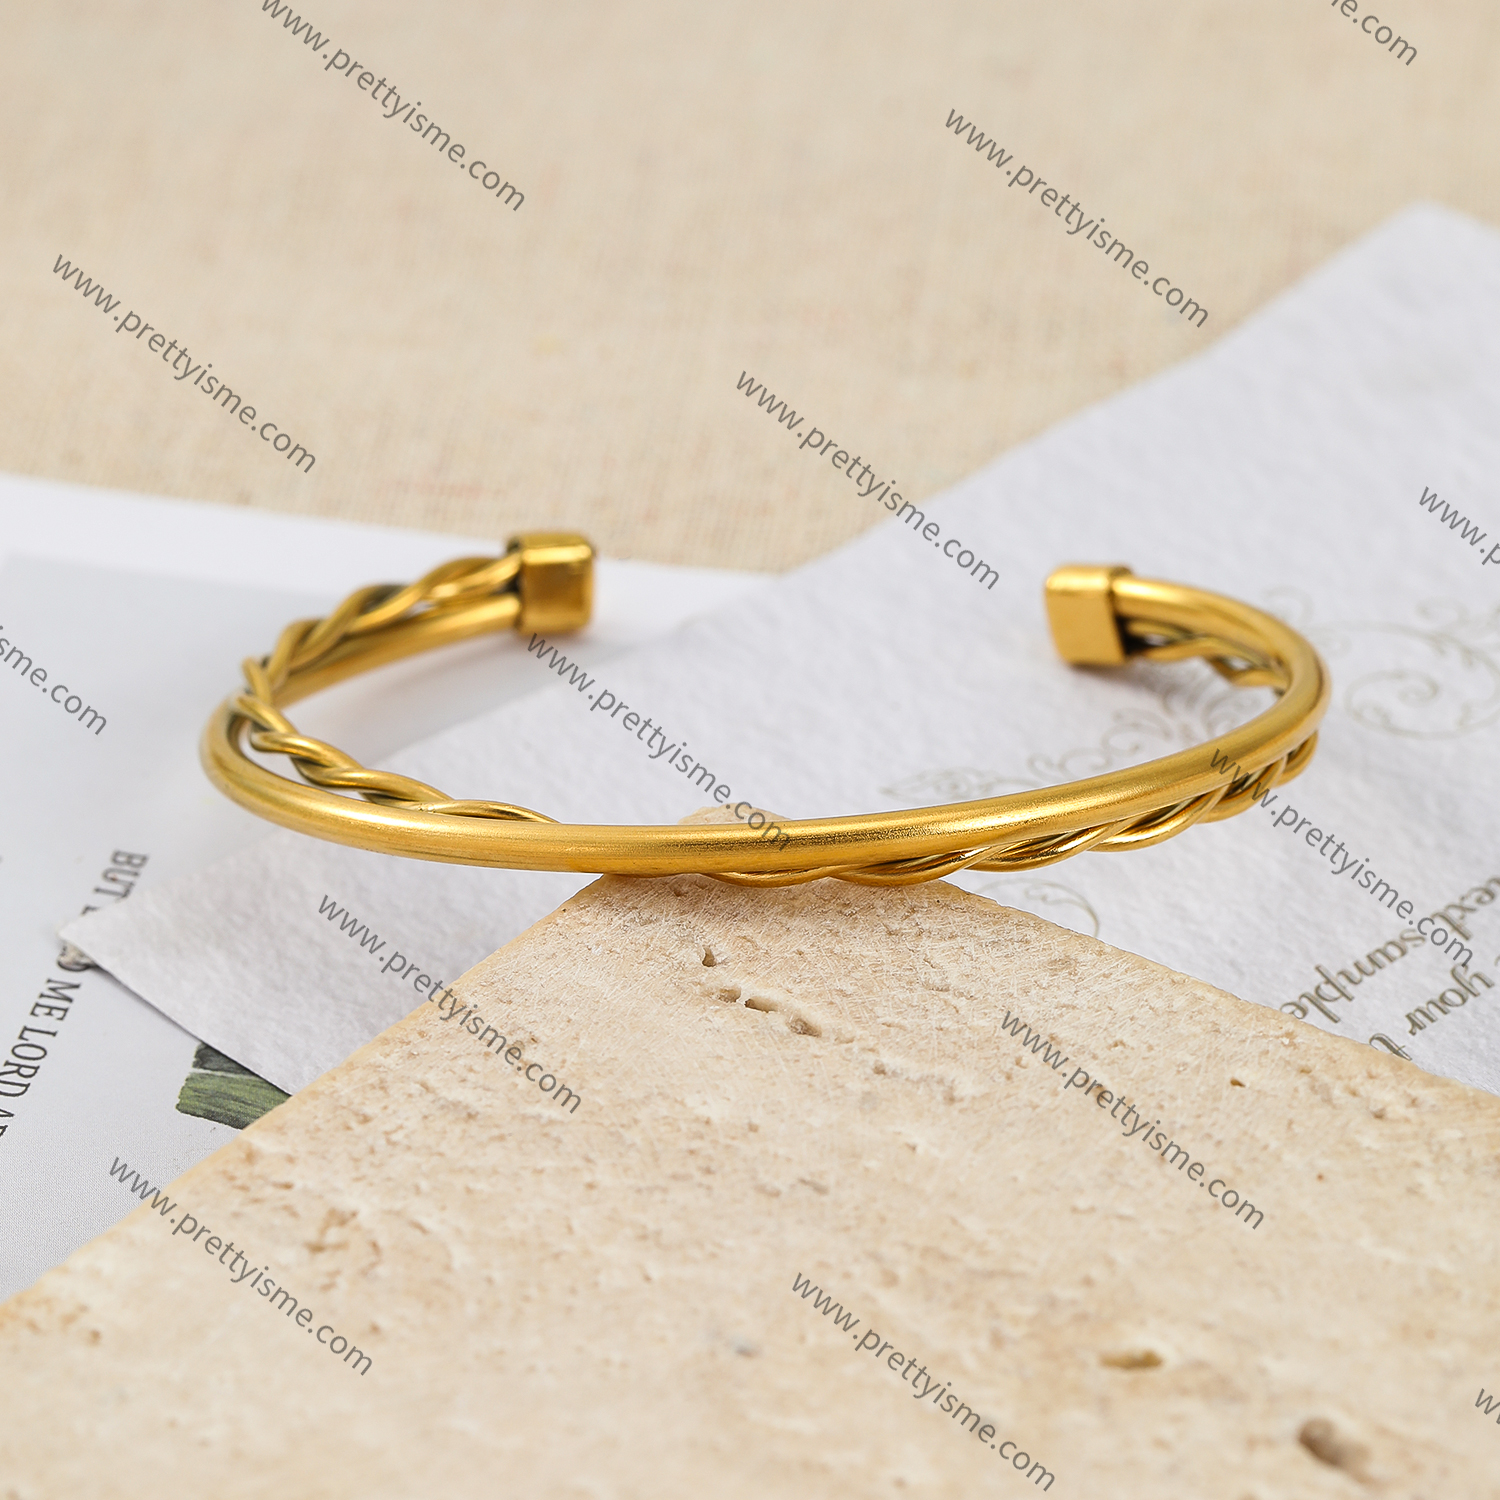 Interwoven Smooth Gold Stainless Steel Bracelet Waterproof Elegant Simple Bracelet (4).webp